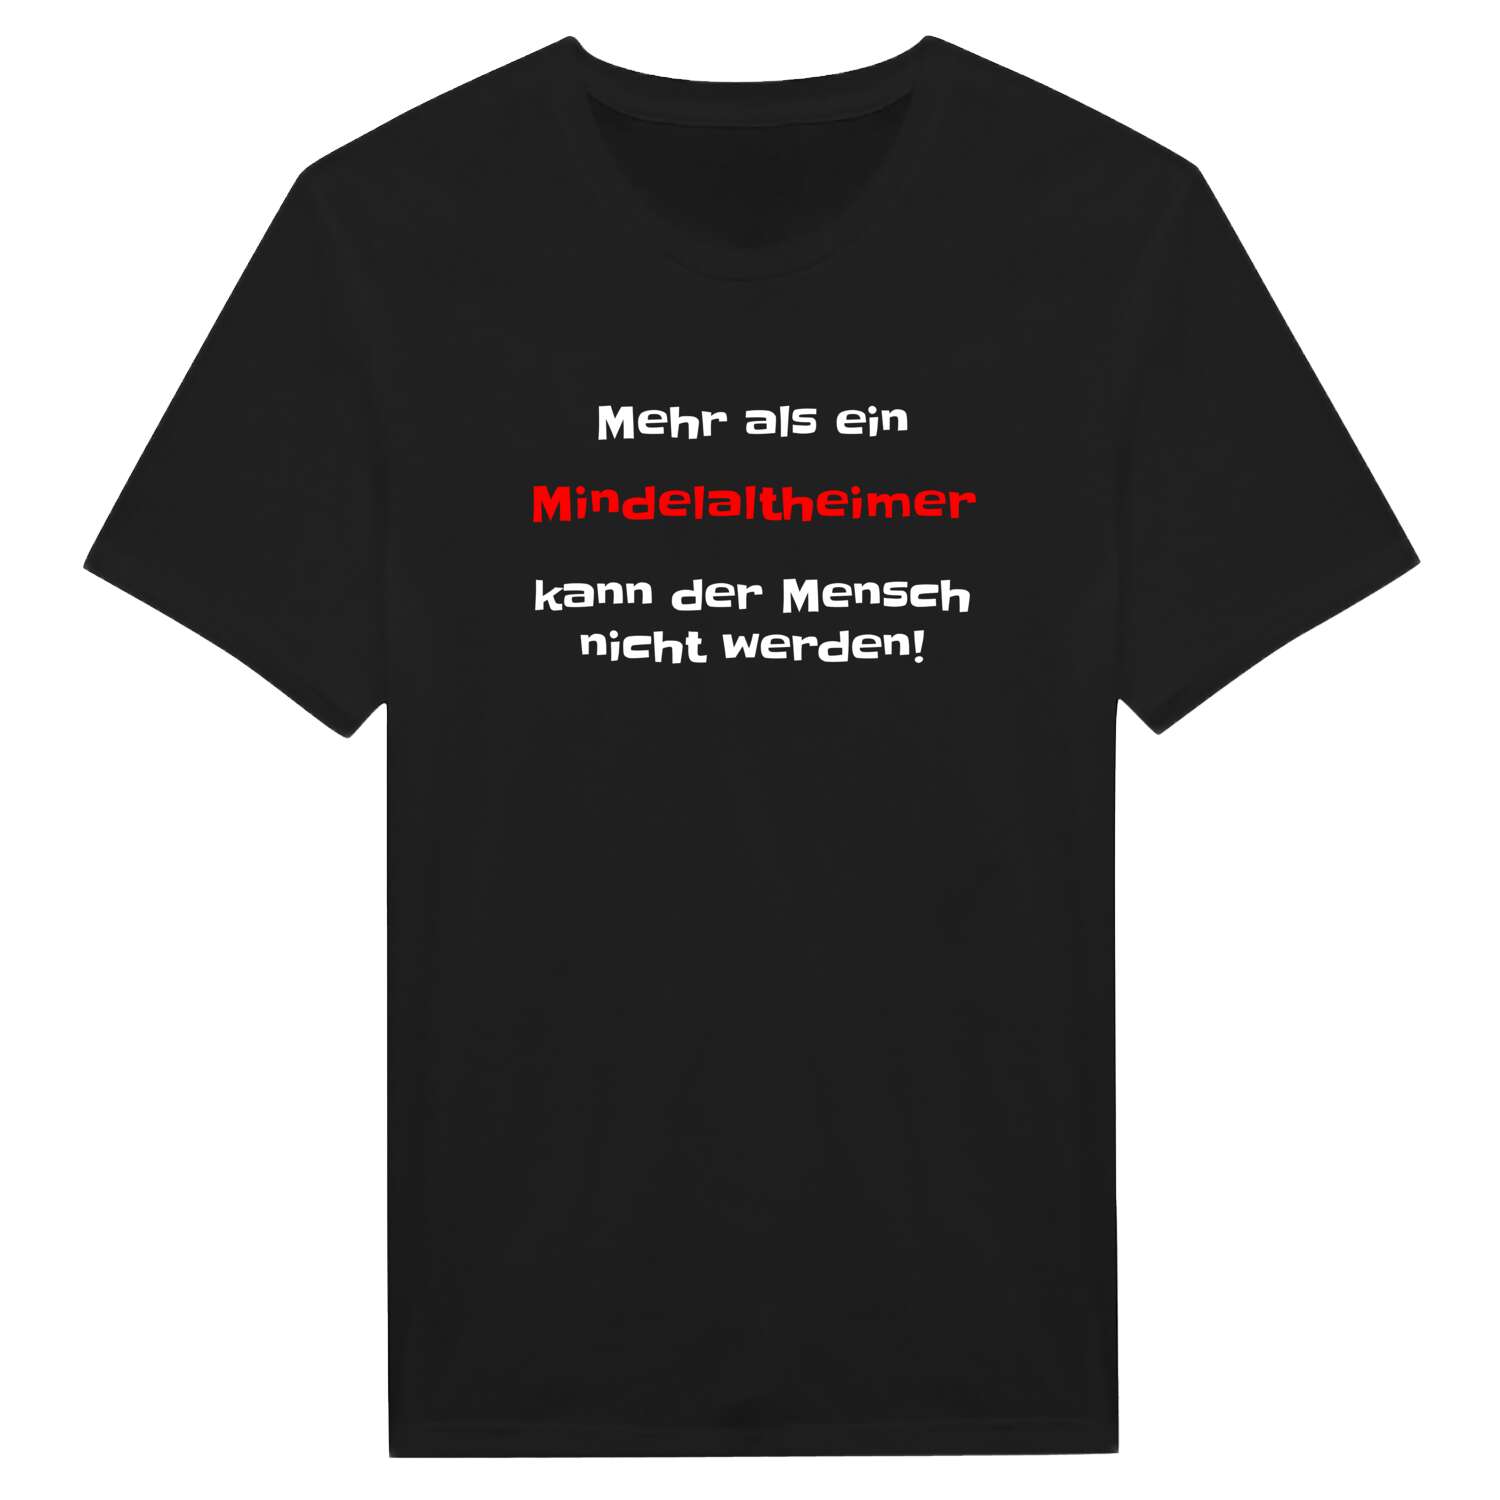 Mindelaltheim T-Shirt »Mehr als ein«